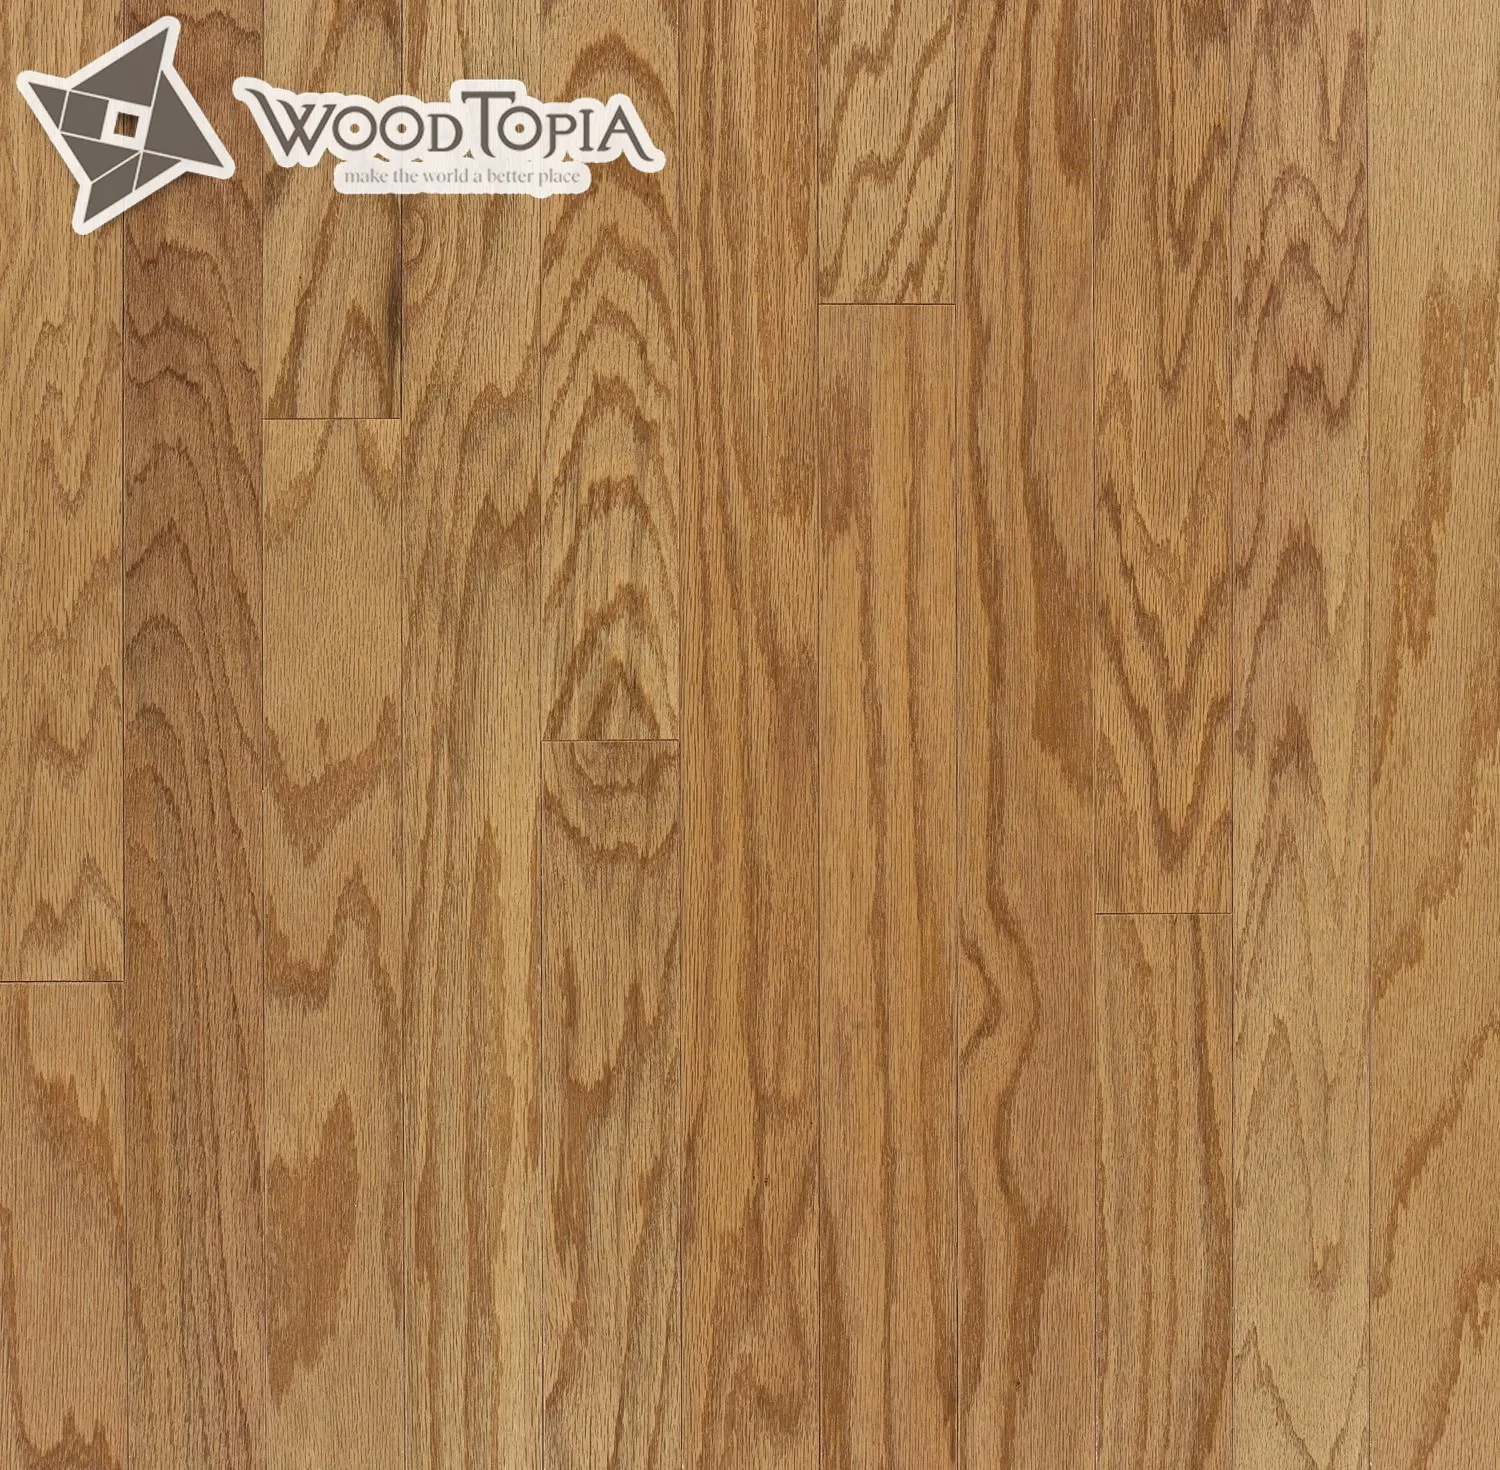 Woodtopia Original Engineered Flooring Stair Nose Buy Engineered